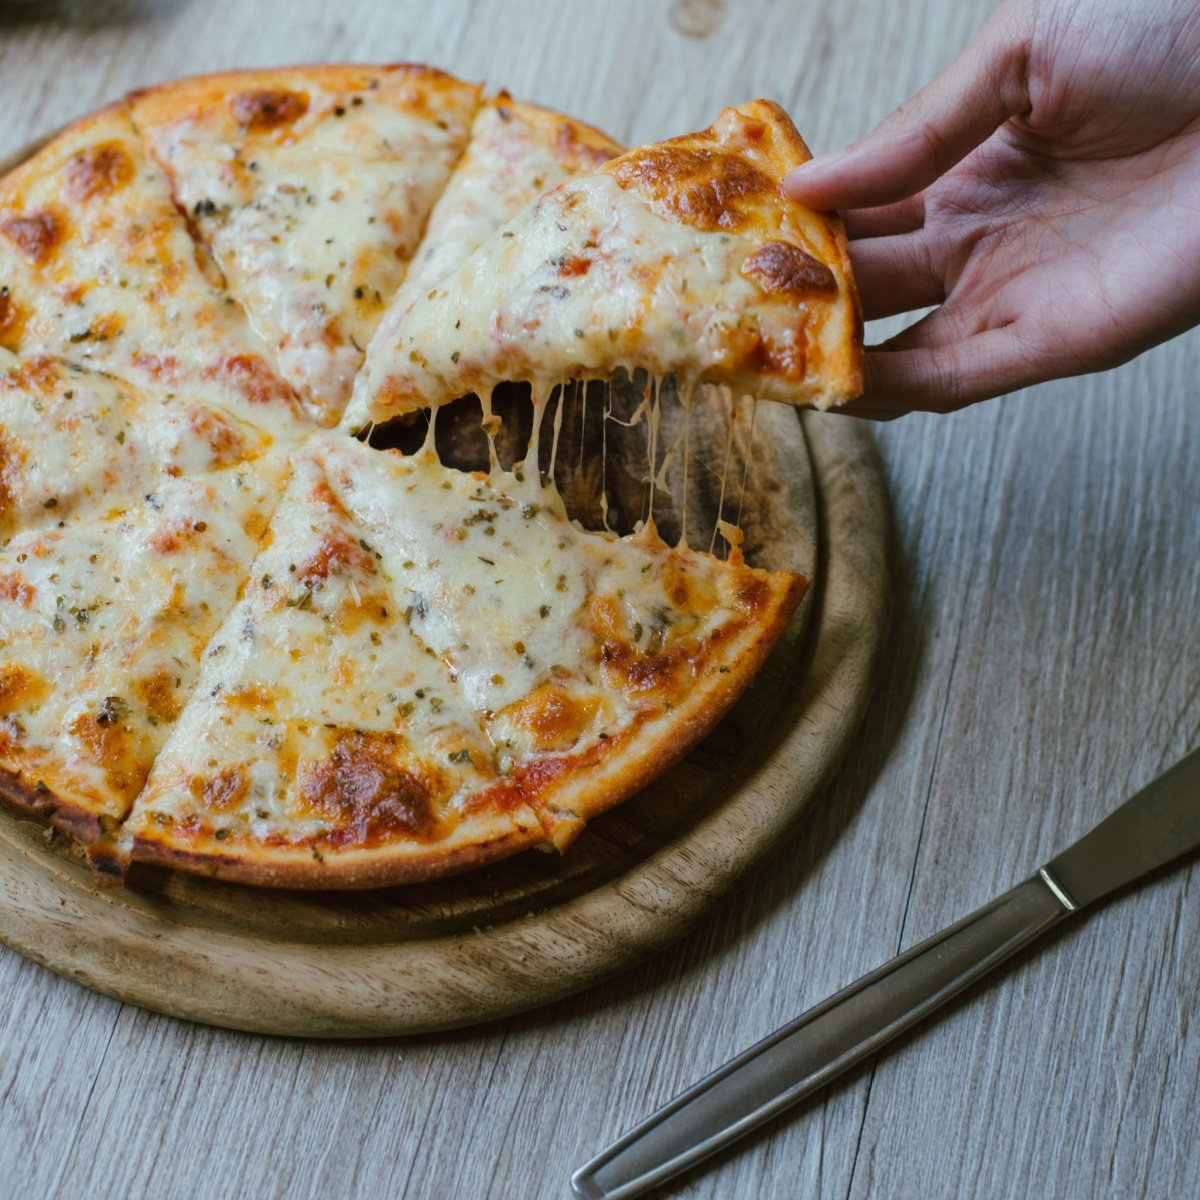 8 inch pizza